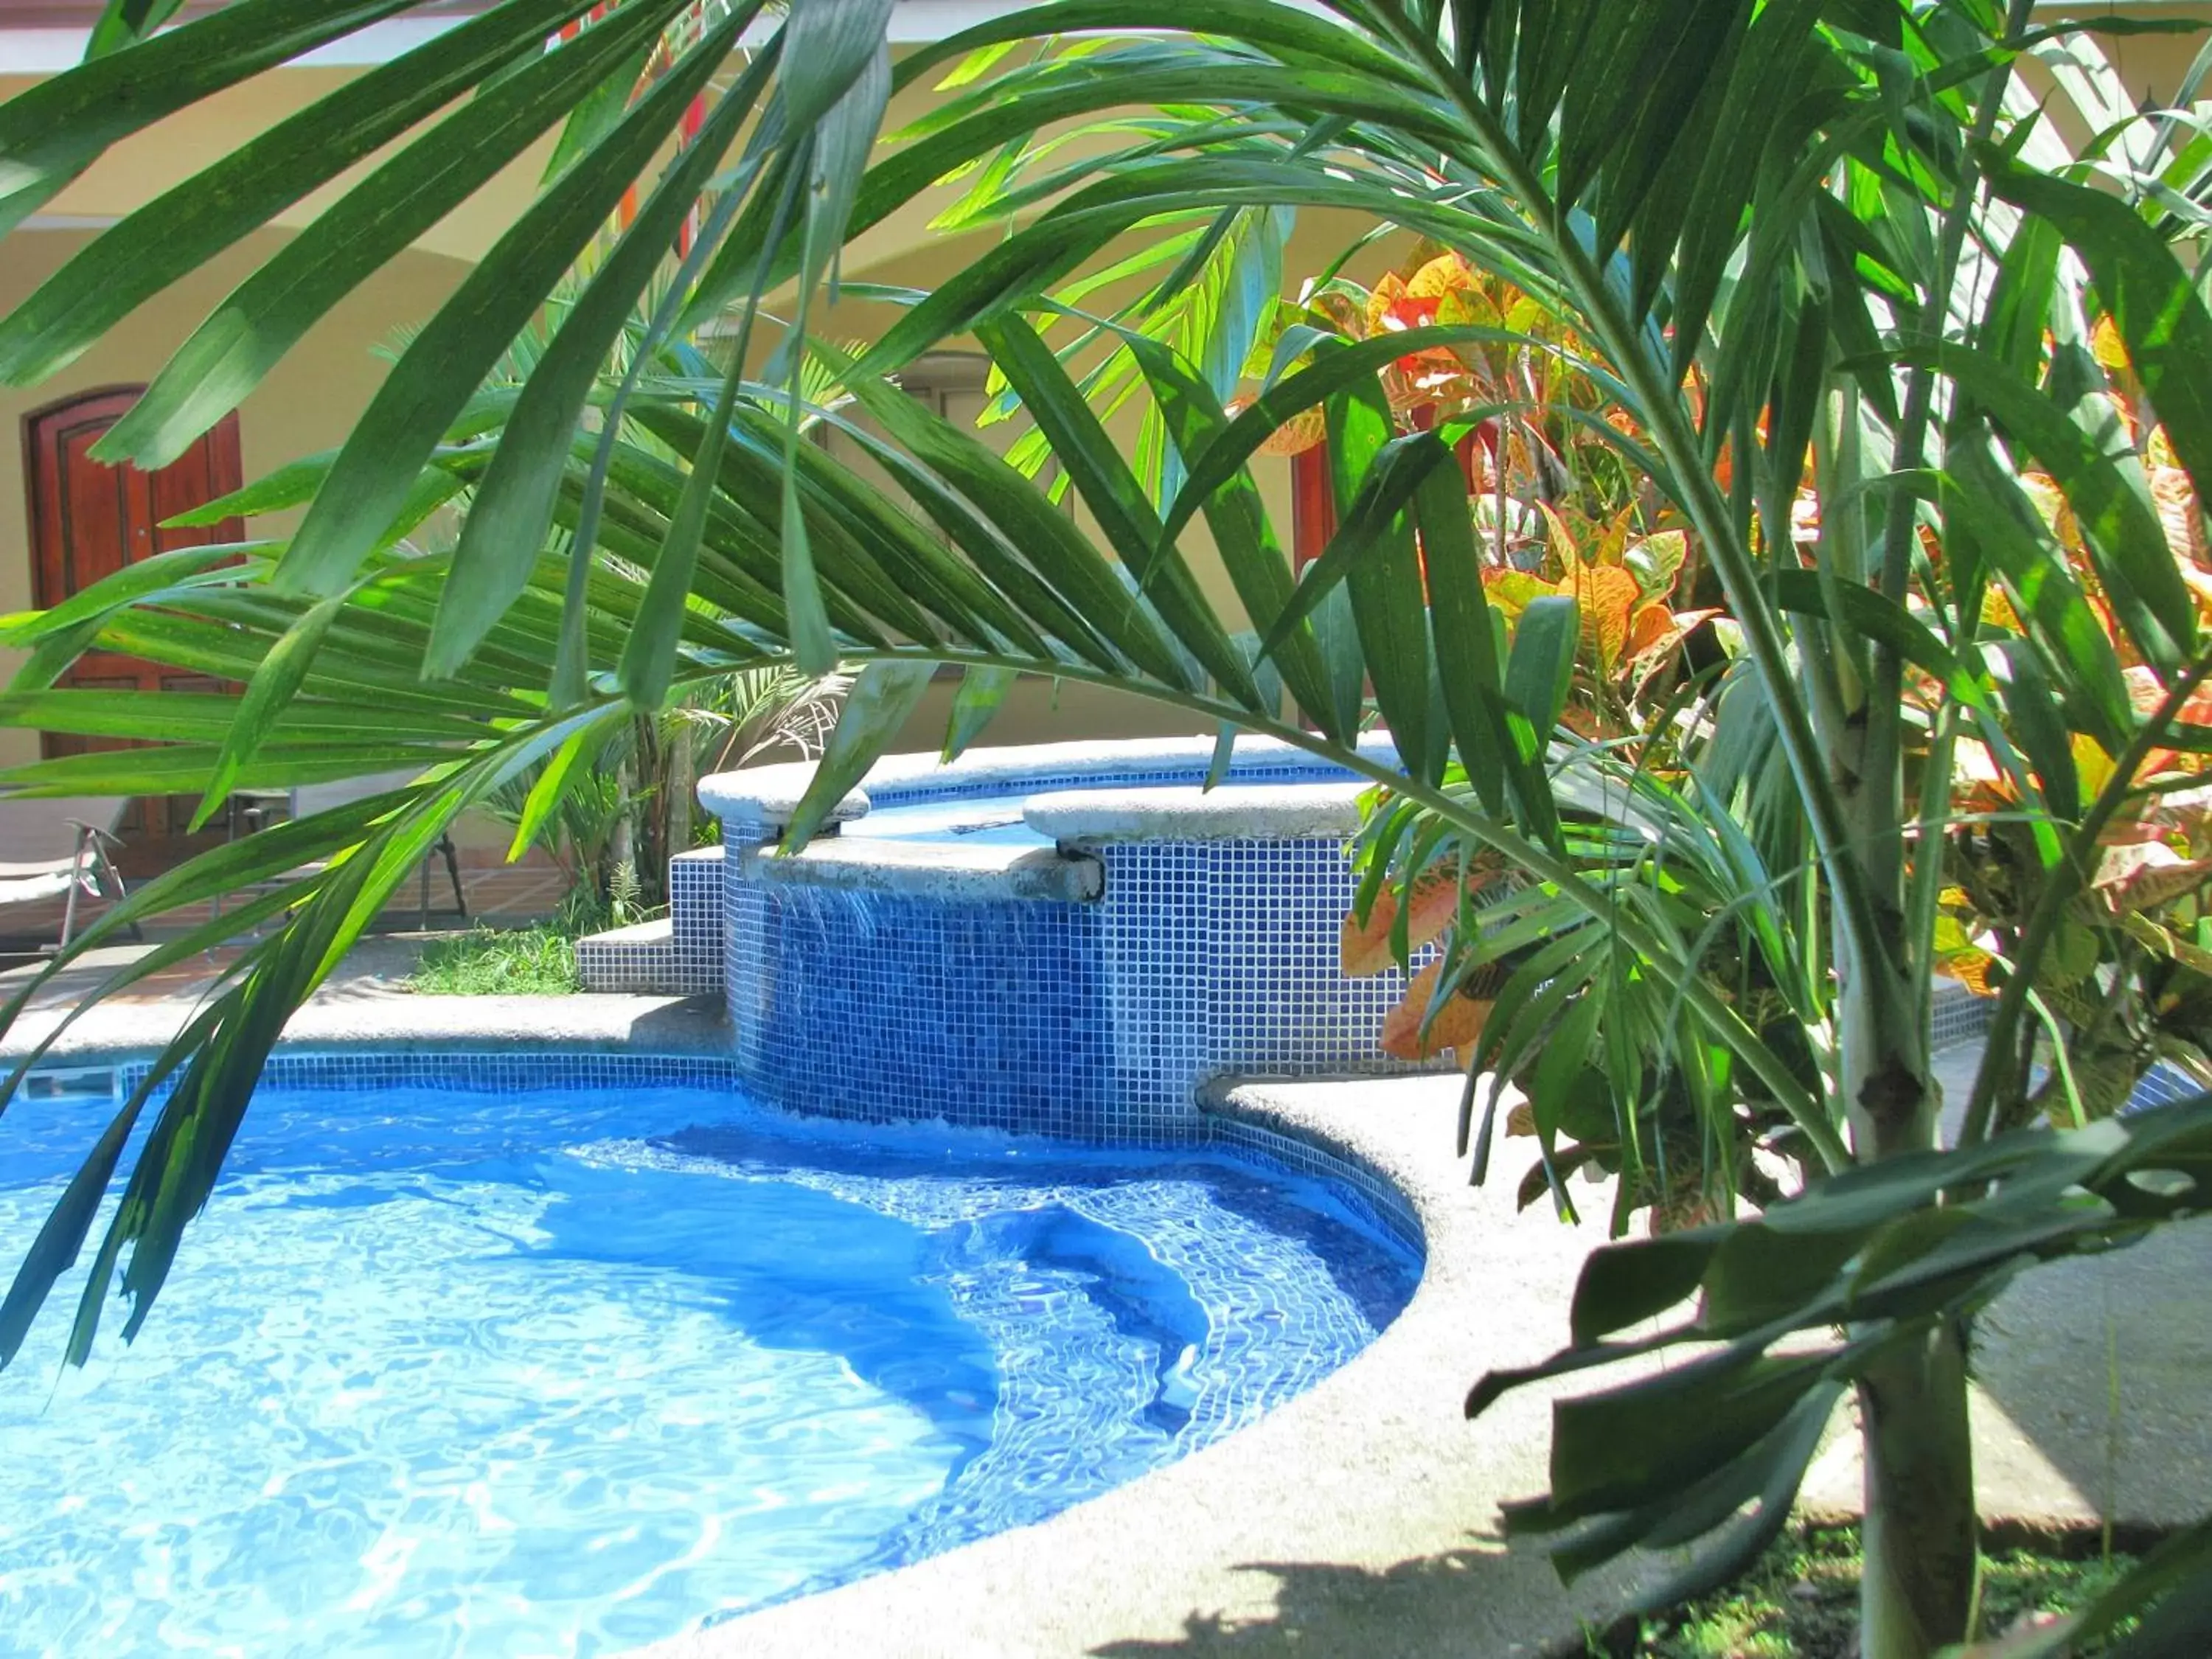 Pool view in Las Brisas Resort and Villas